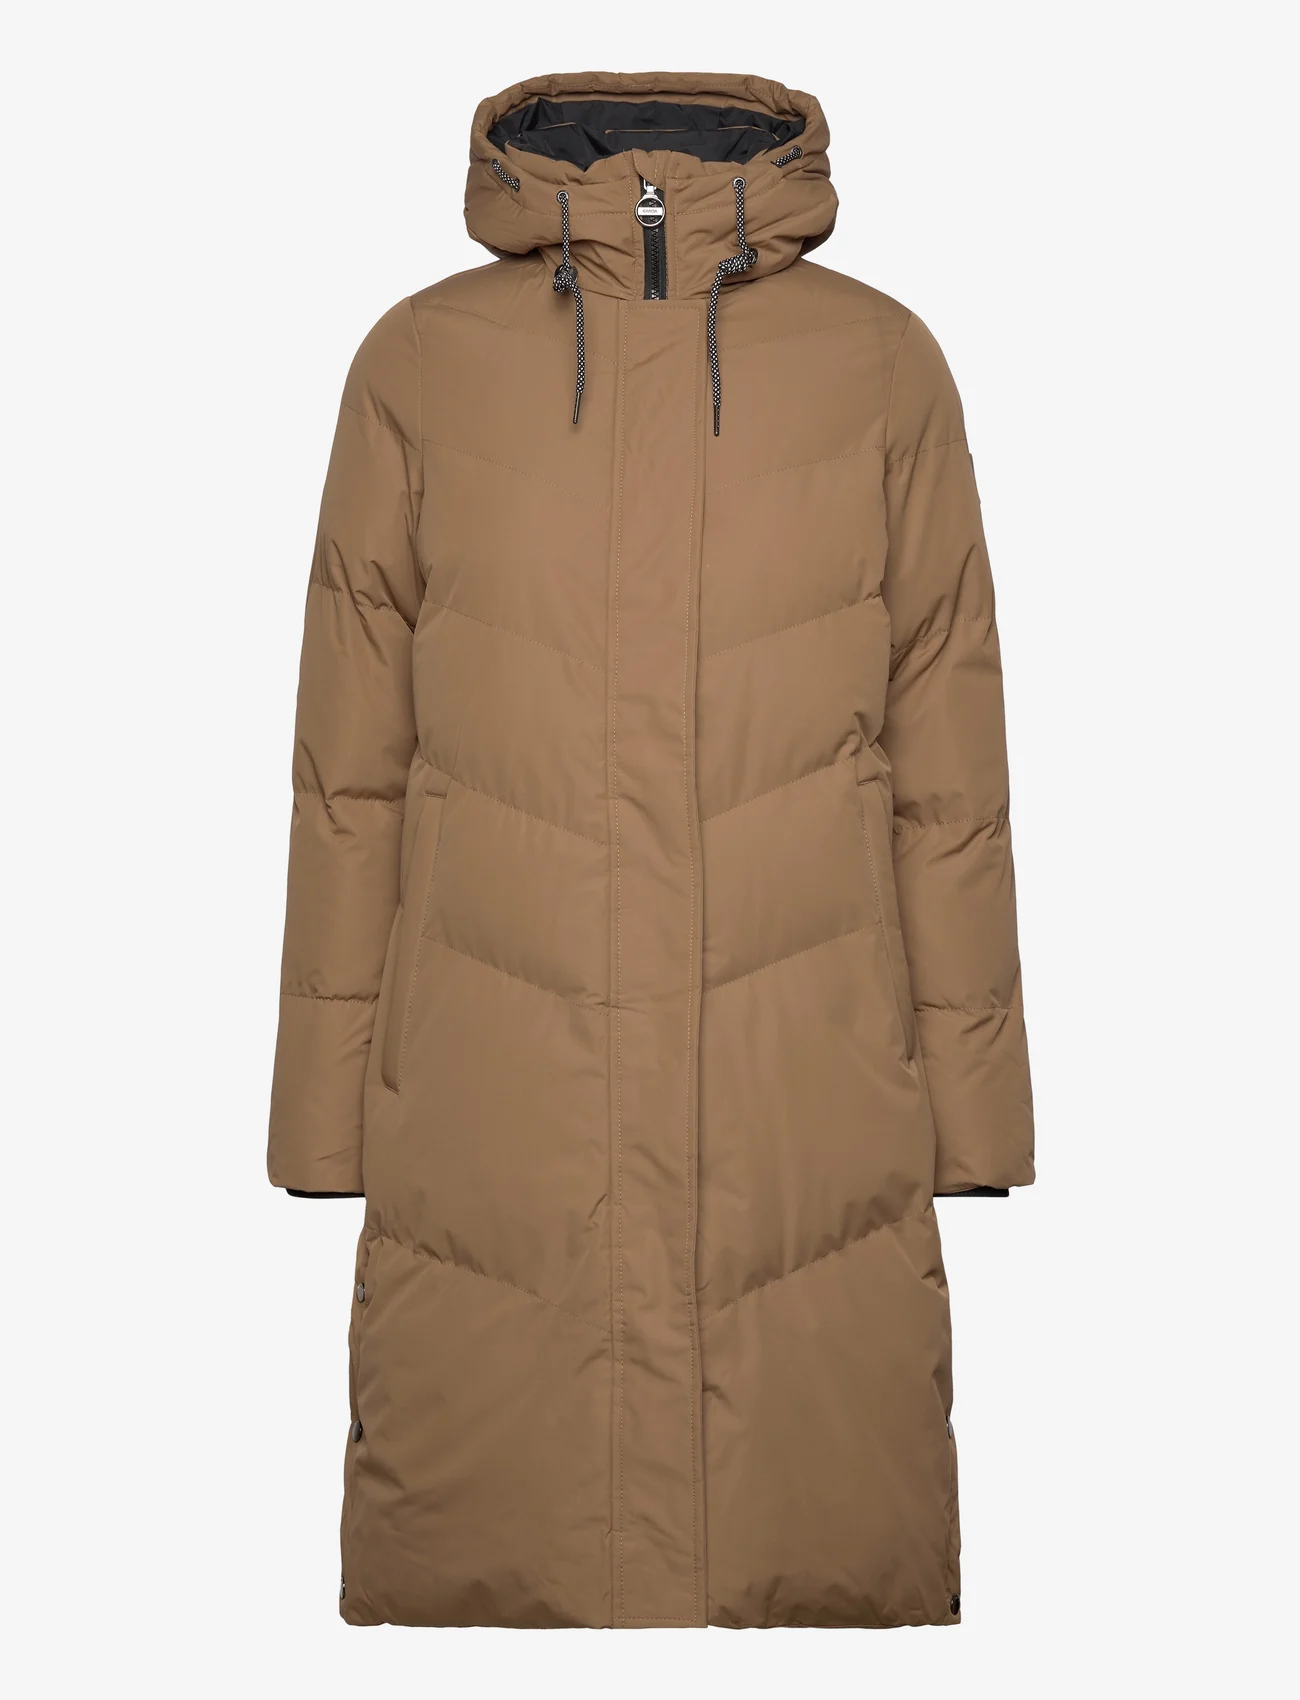 Garcia - ladies outdoor jackets - winterjassen - brown - 0